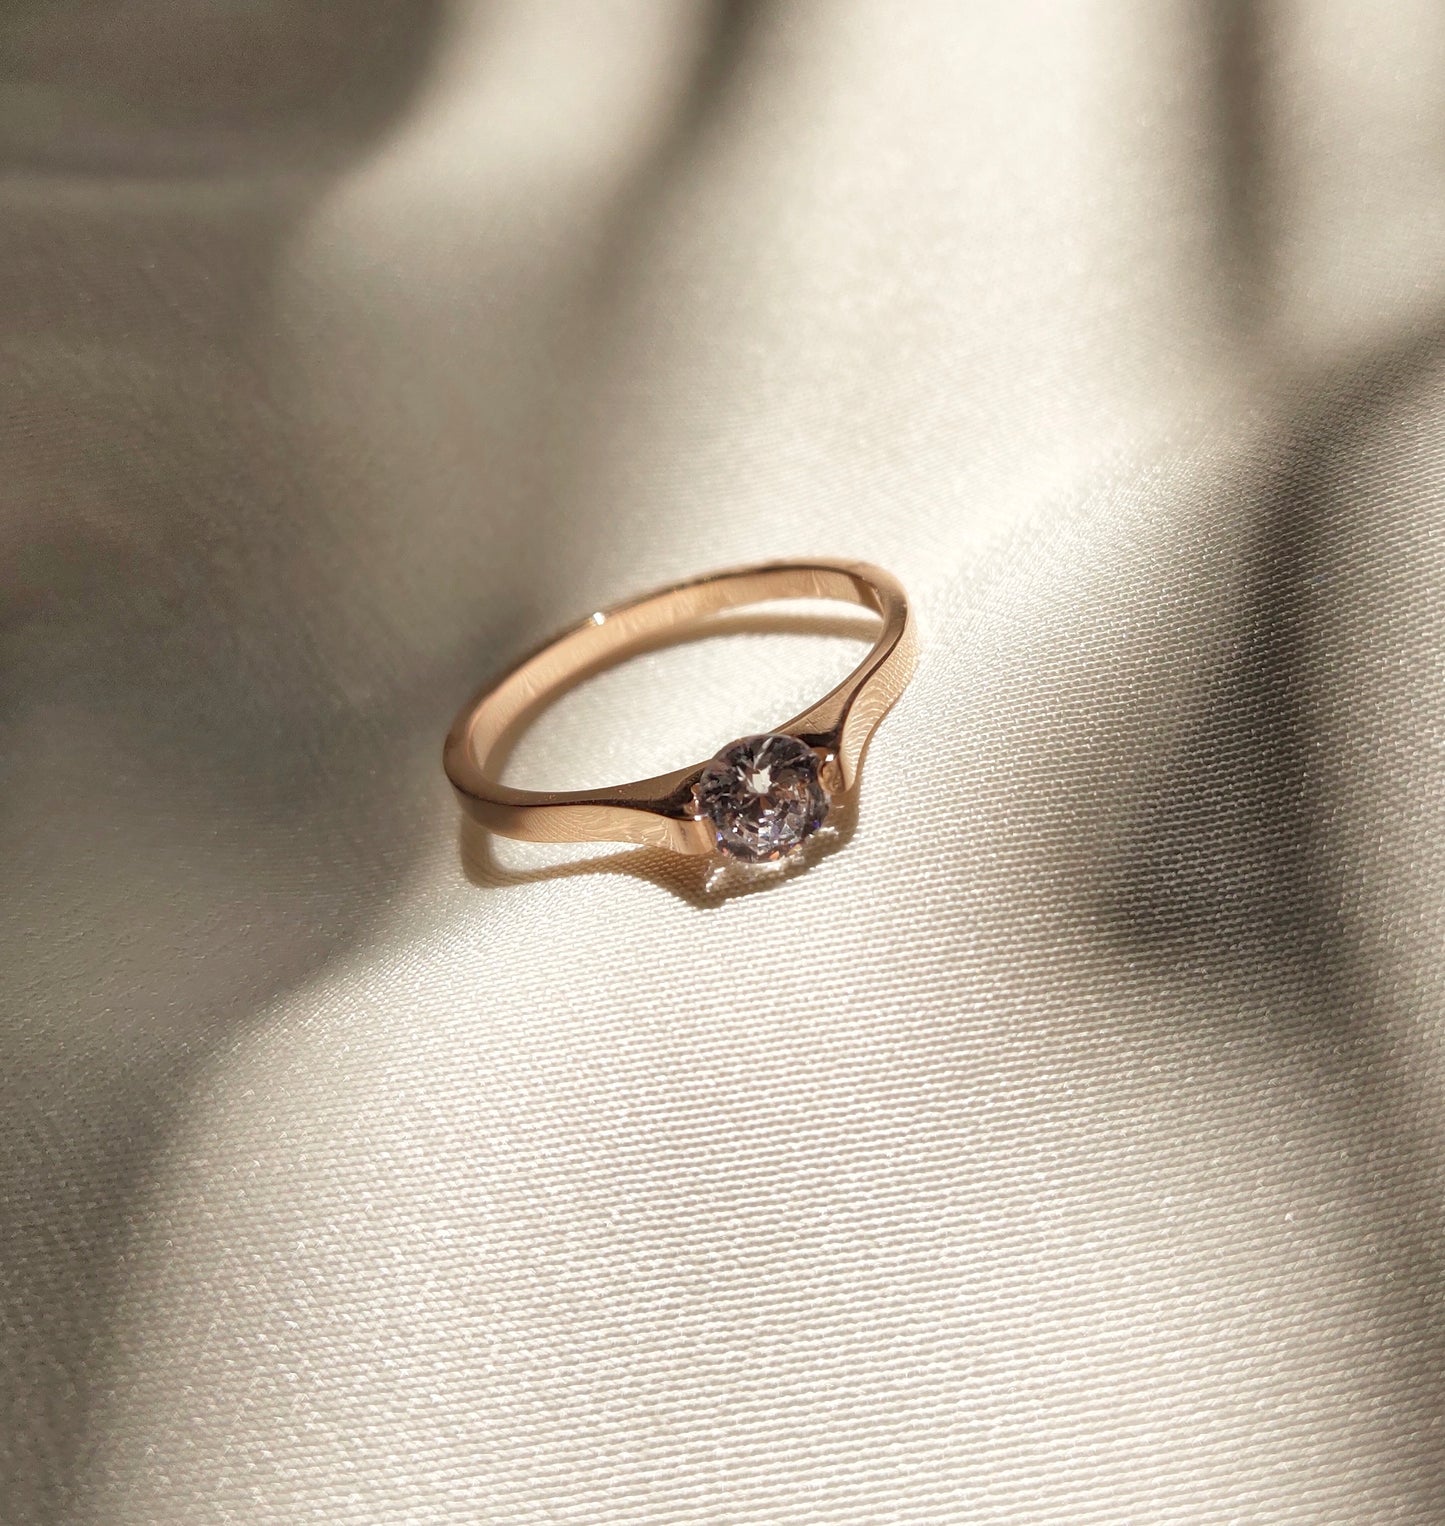 Elegantly Stainless Steel Fashion Ring